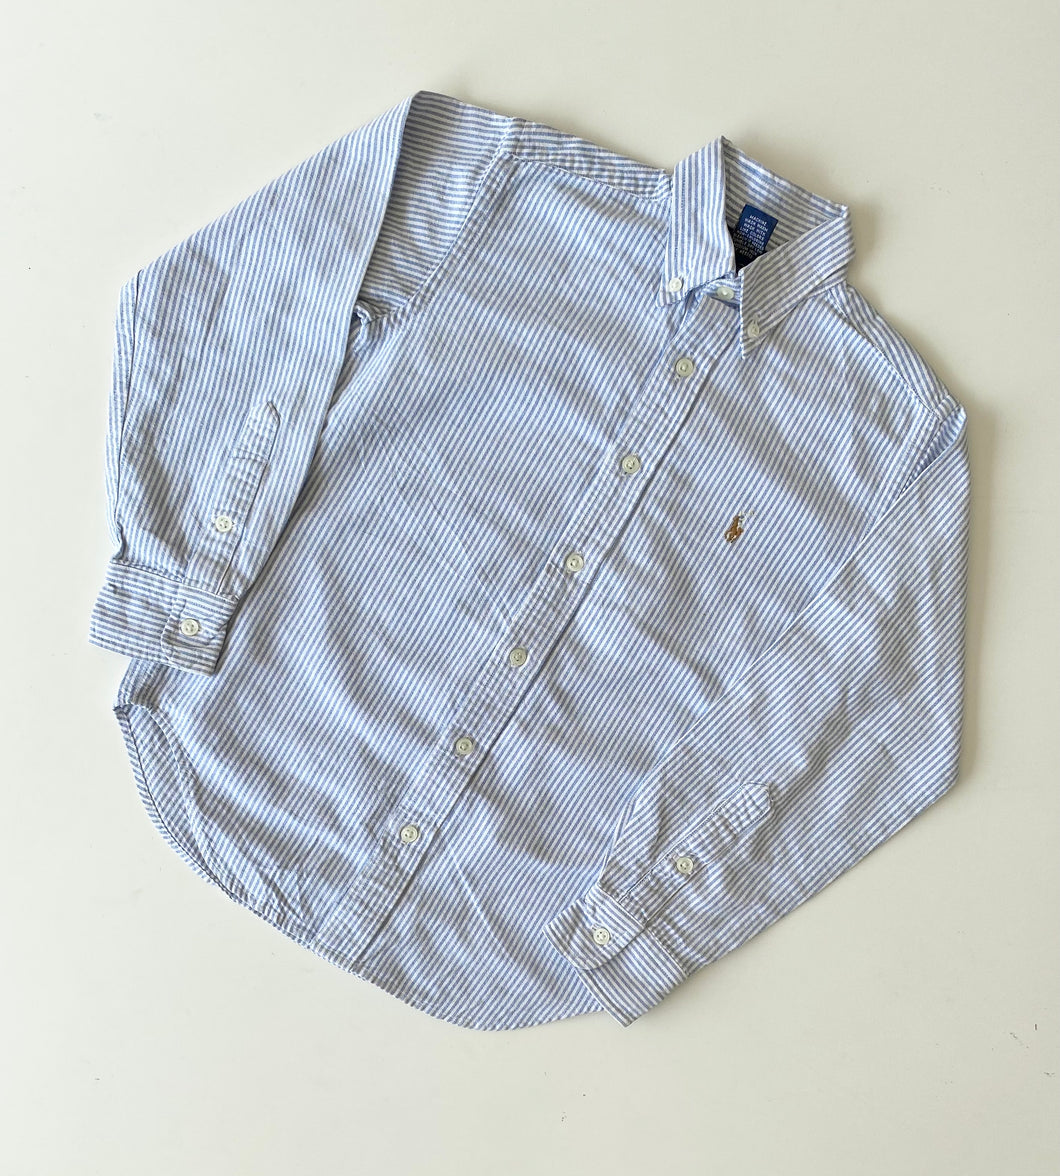 Ralph Lauren shirt (Age 10)